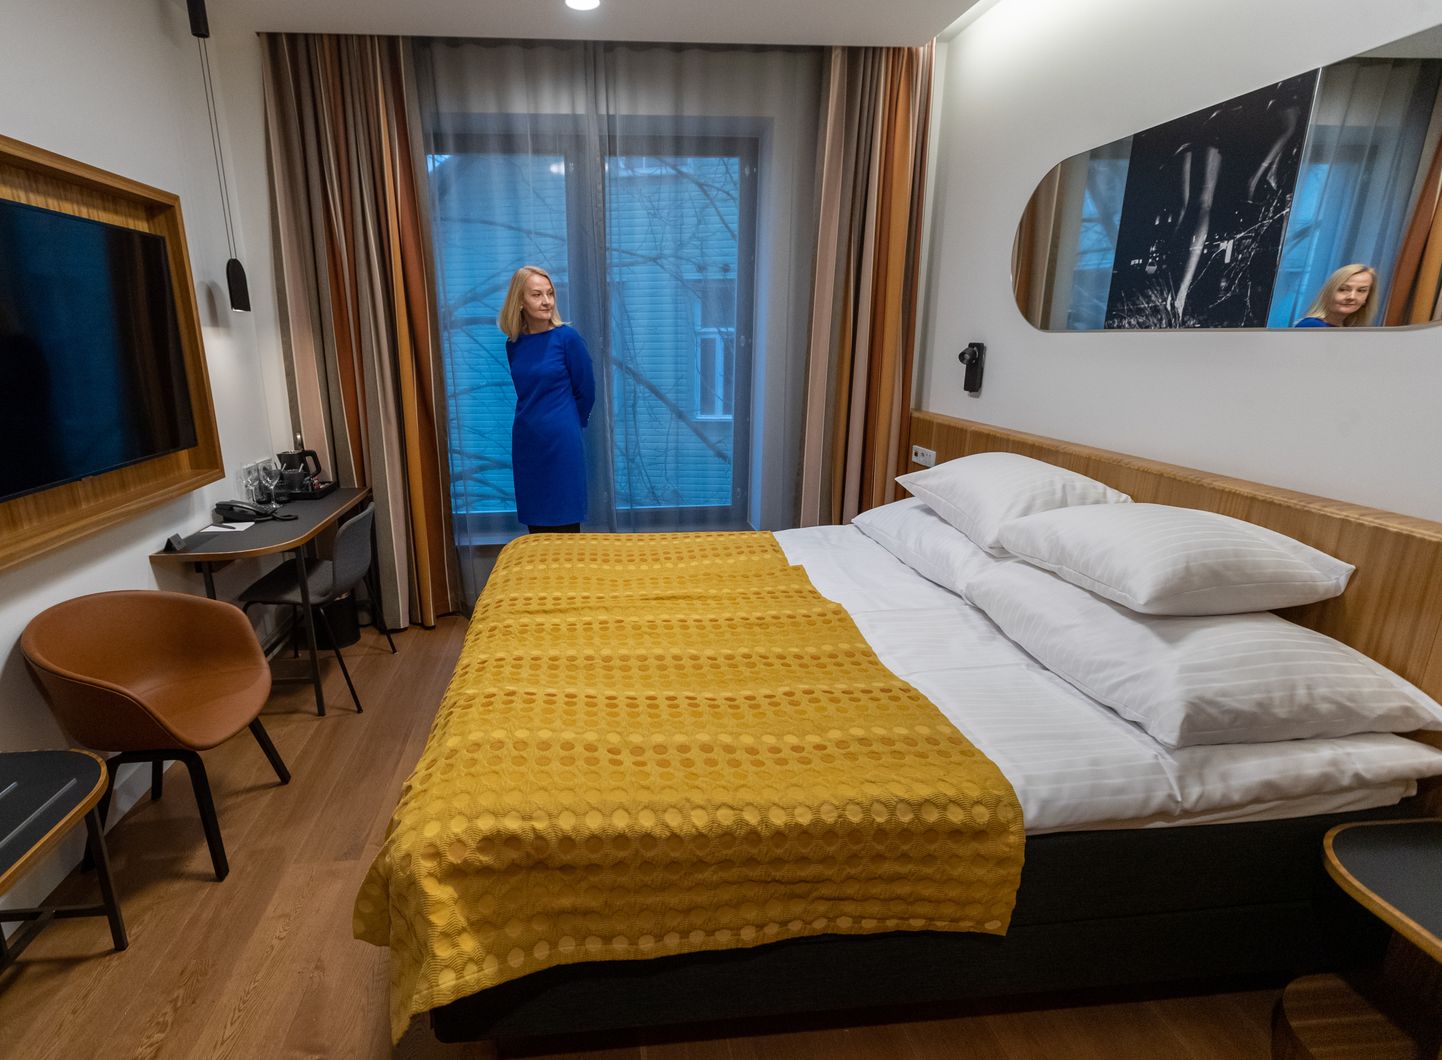 Кровать в номере отеля Hestia Kentmanni, снимок иллюстративный